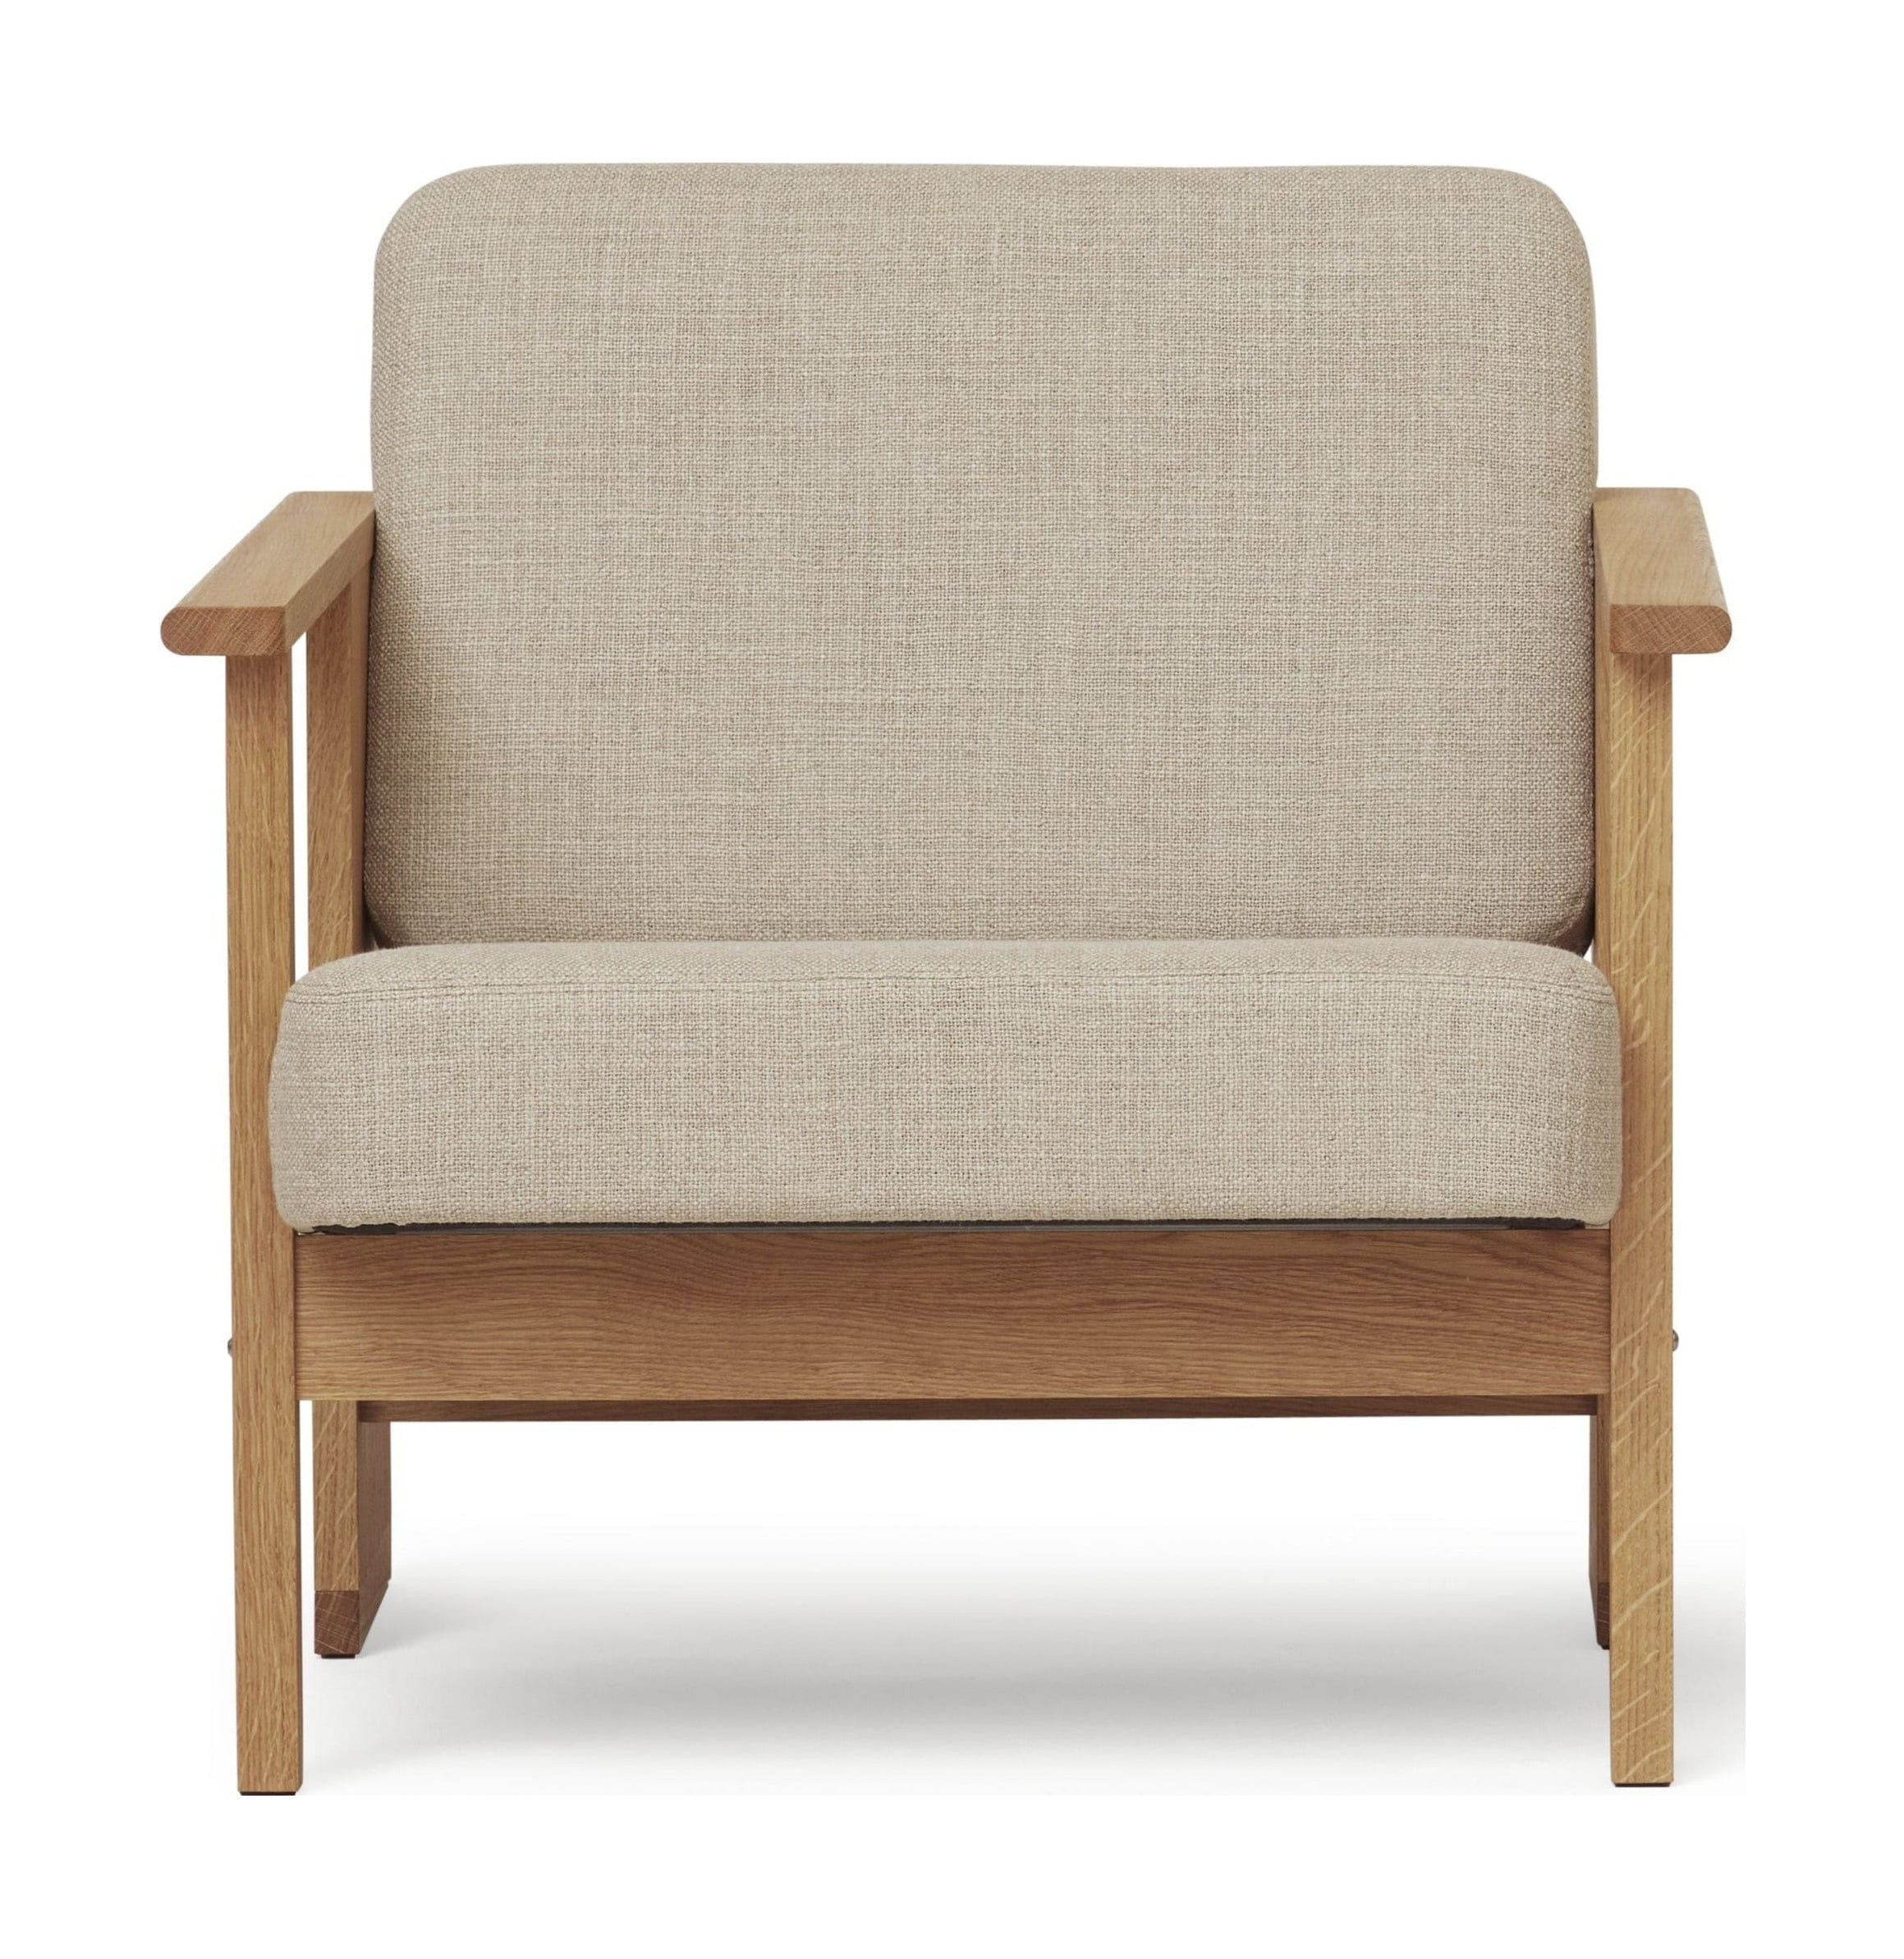 Formular & Refine Block Lounge Chair. Eiche